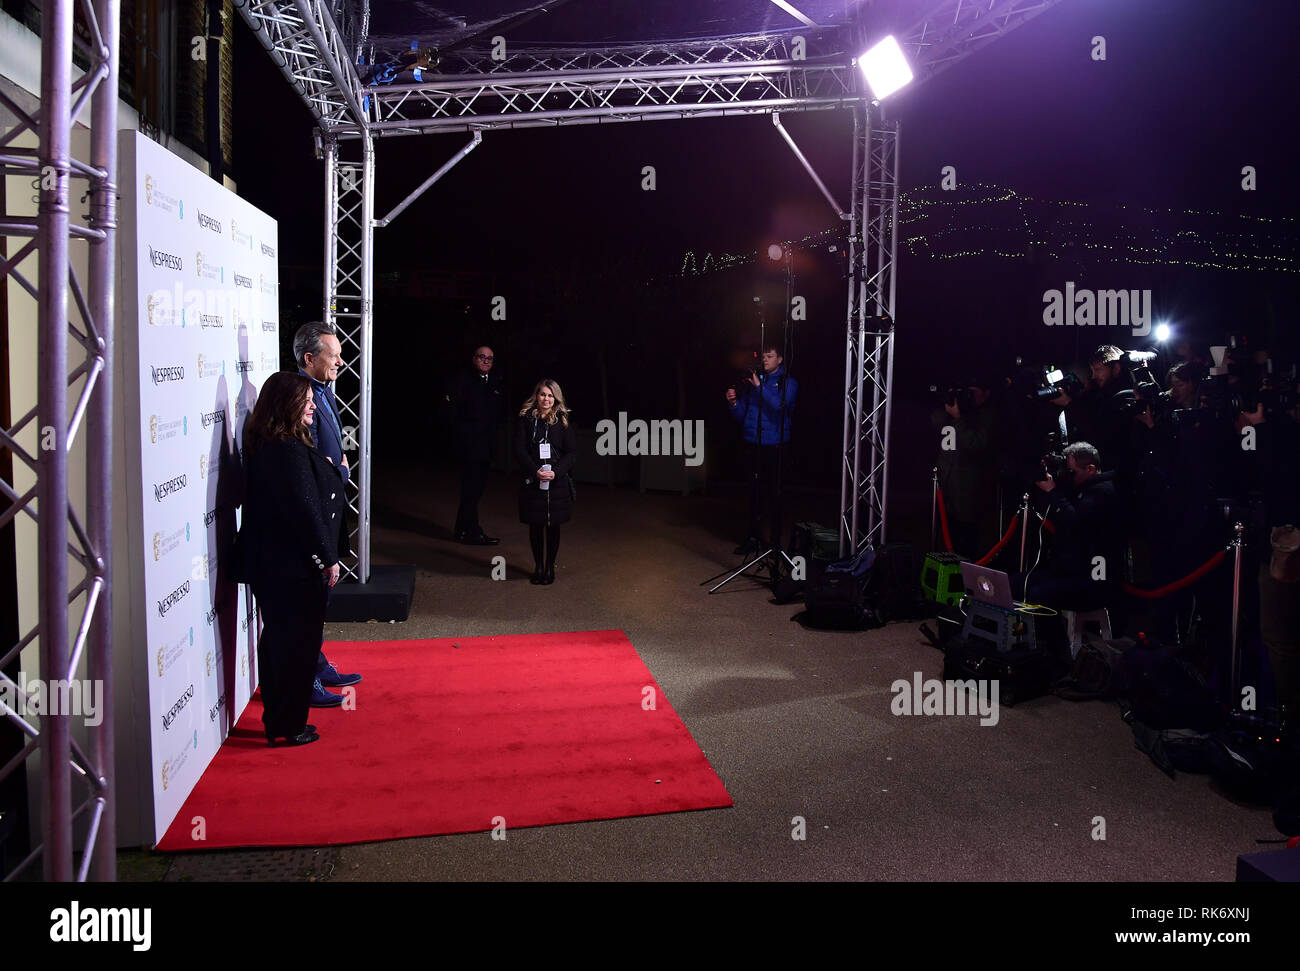 Melissa McCarthy e Richard E. concedere frequentando il Nespresso British Academy Film Awards Nominees' Party al Kensington Palace di Londra. Foto Stock